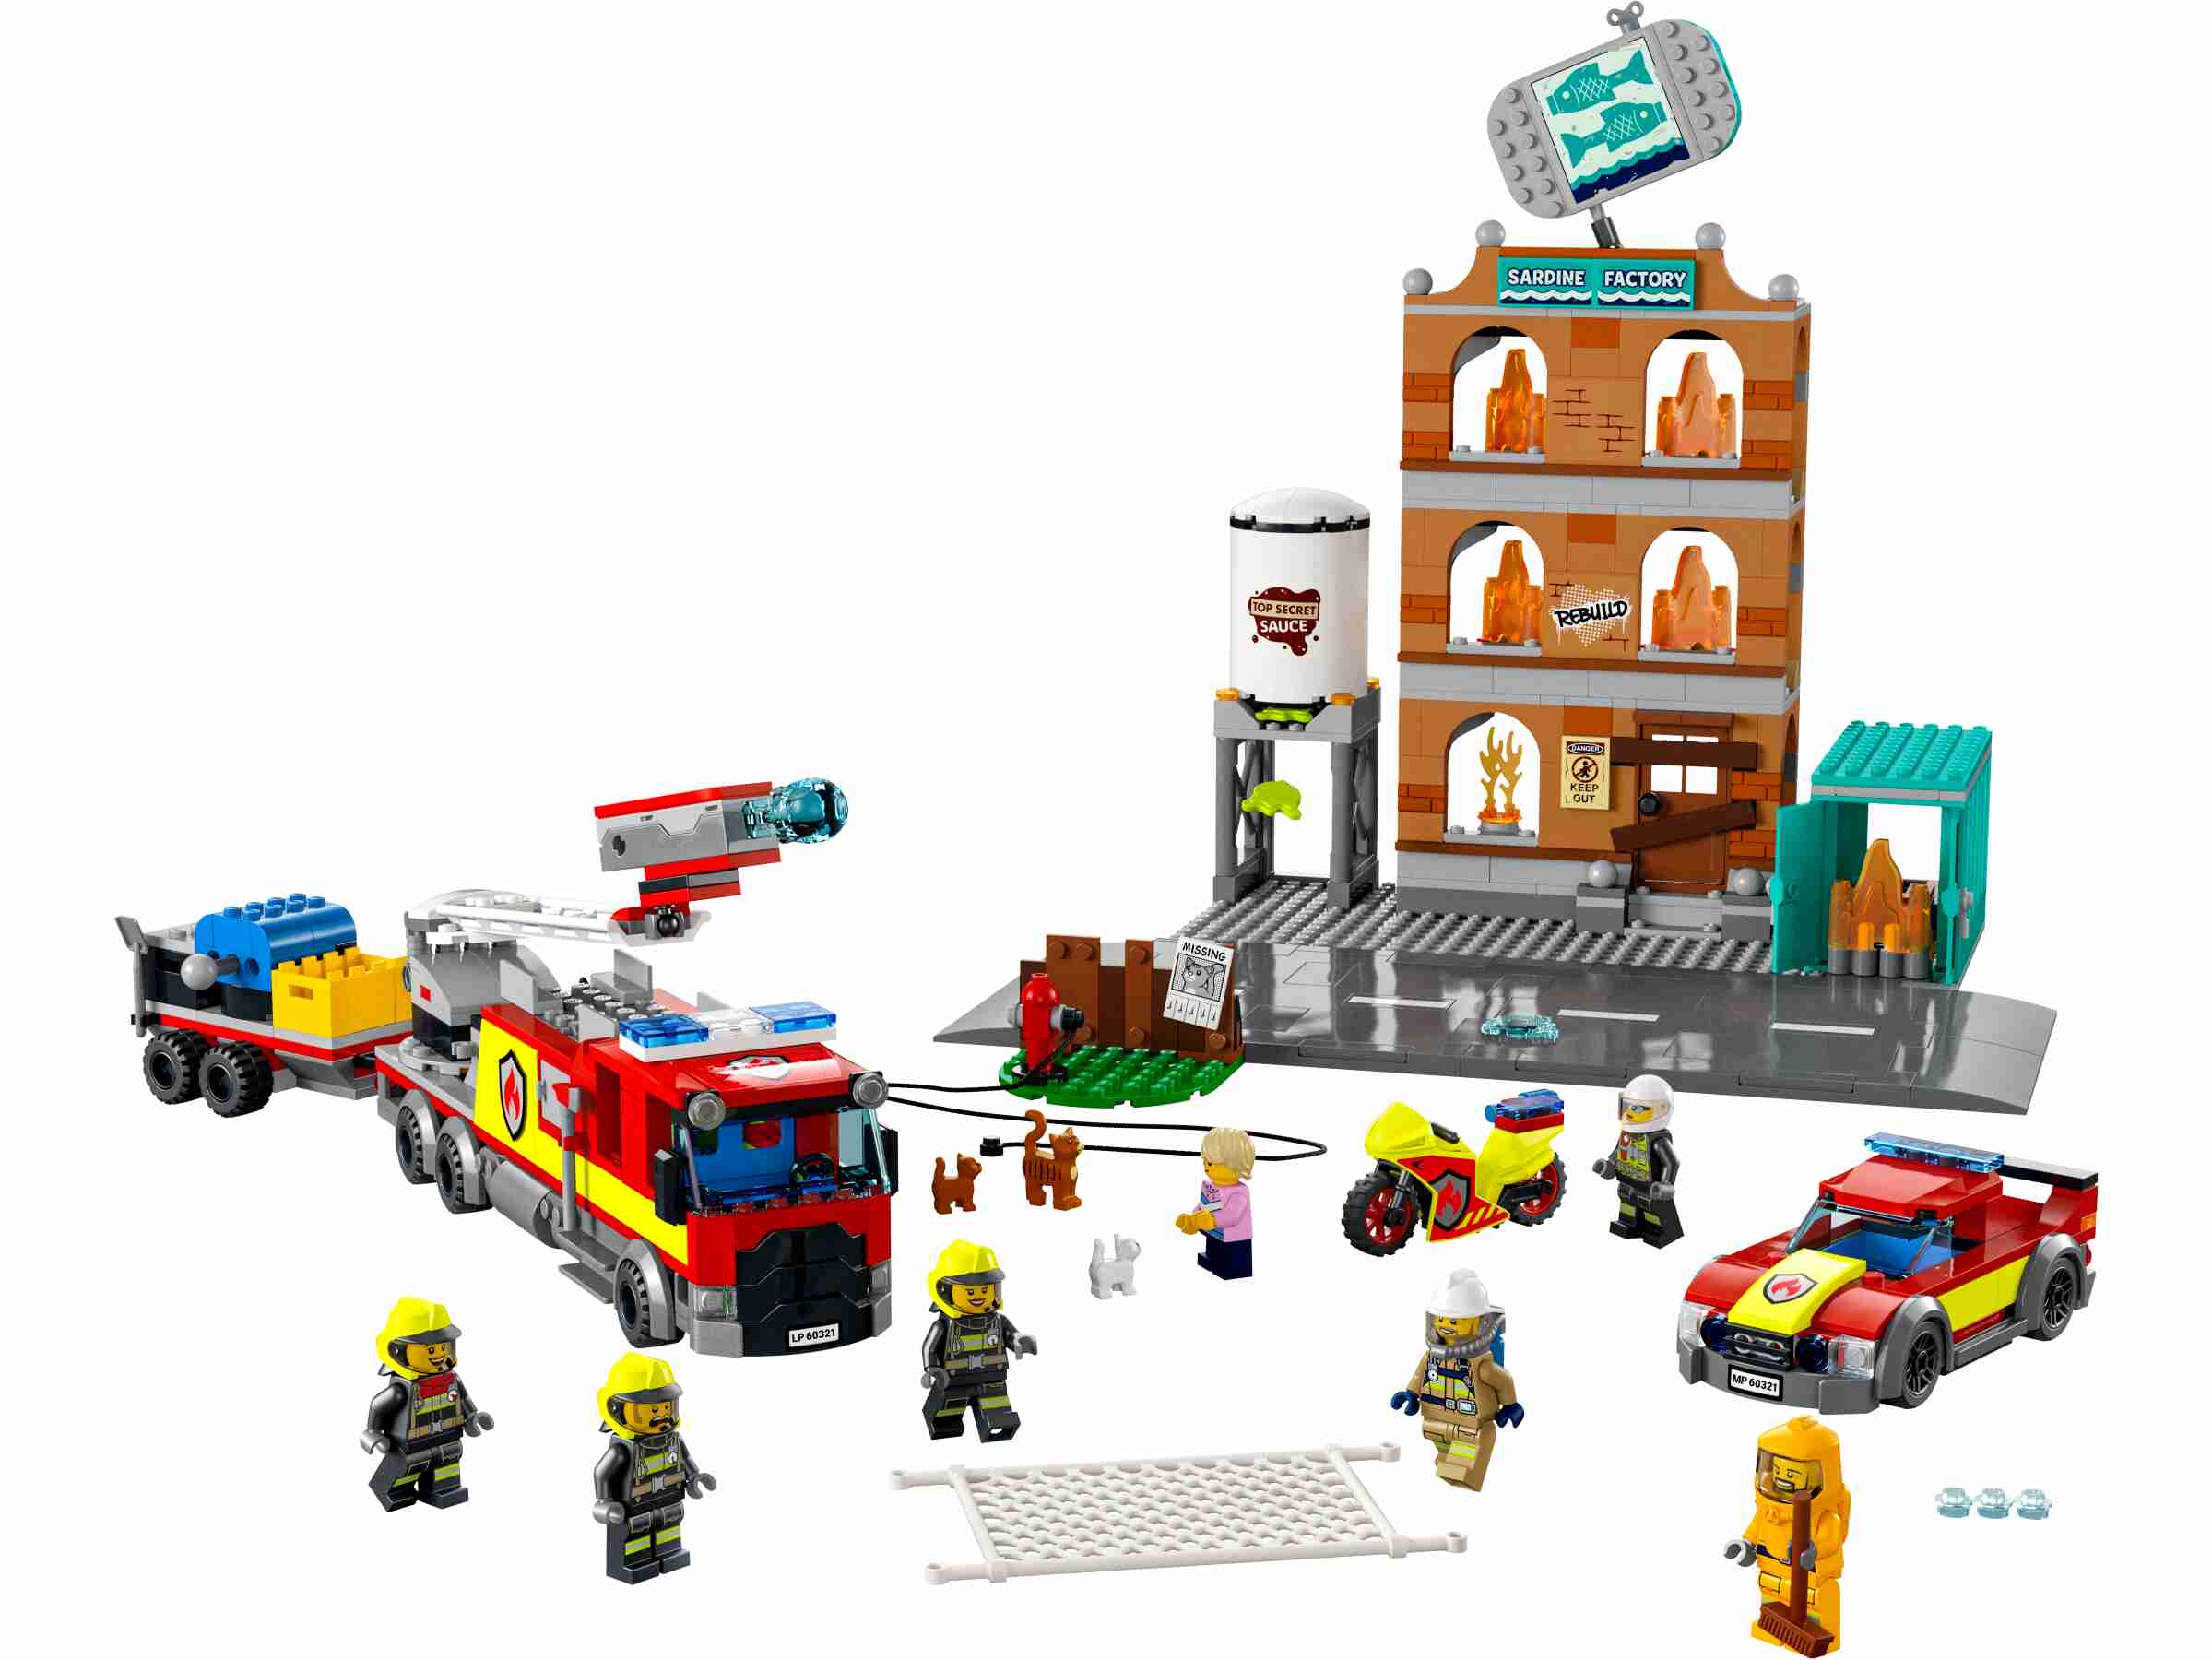 LEGO 60321 City Fire Feuerwehr BAU-Set mit Flammen, sowie 5 Minifiguren uvm.